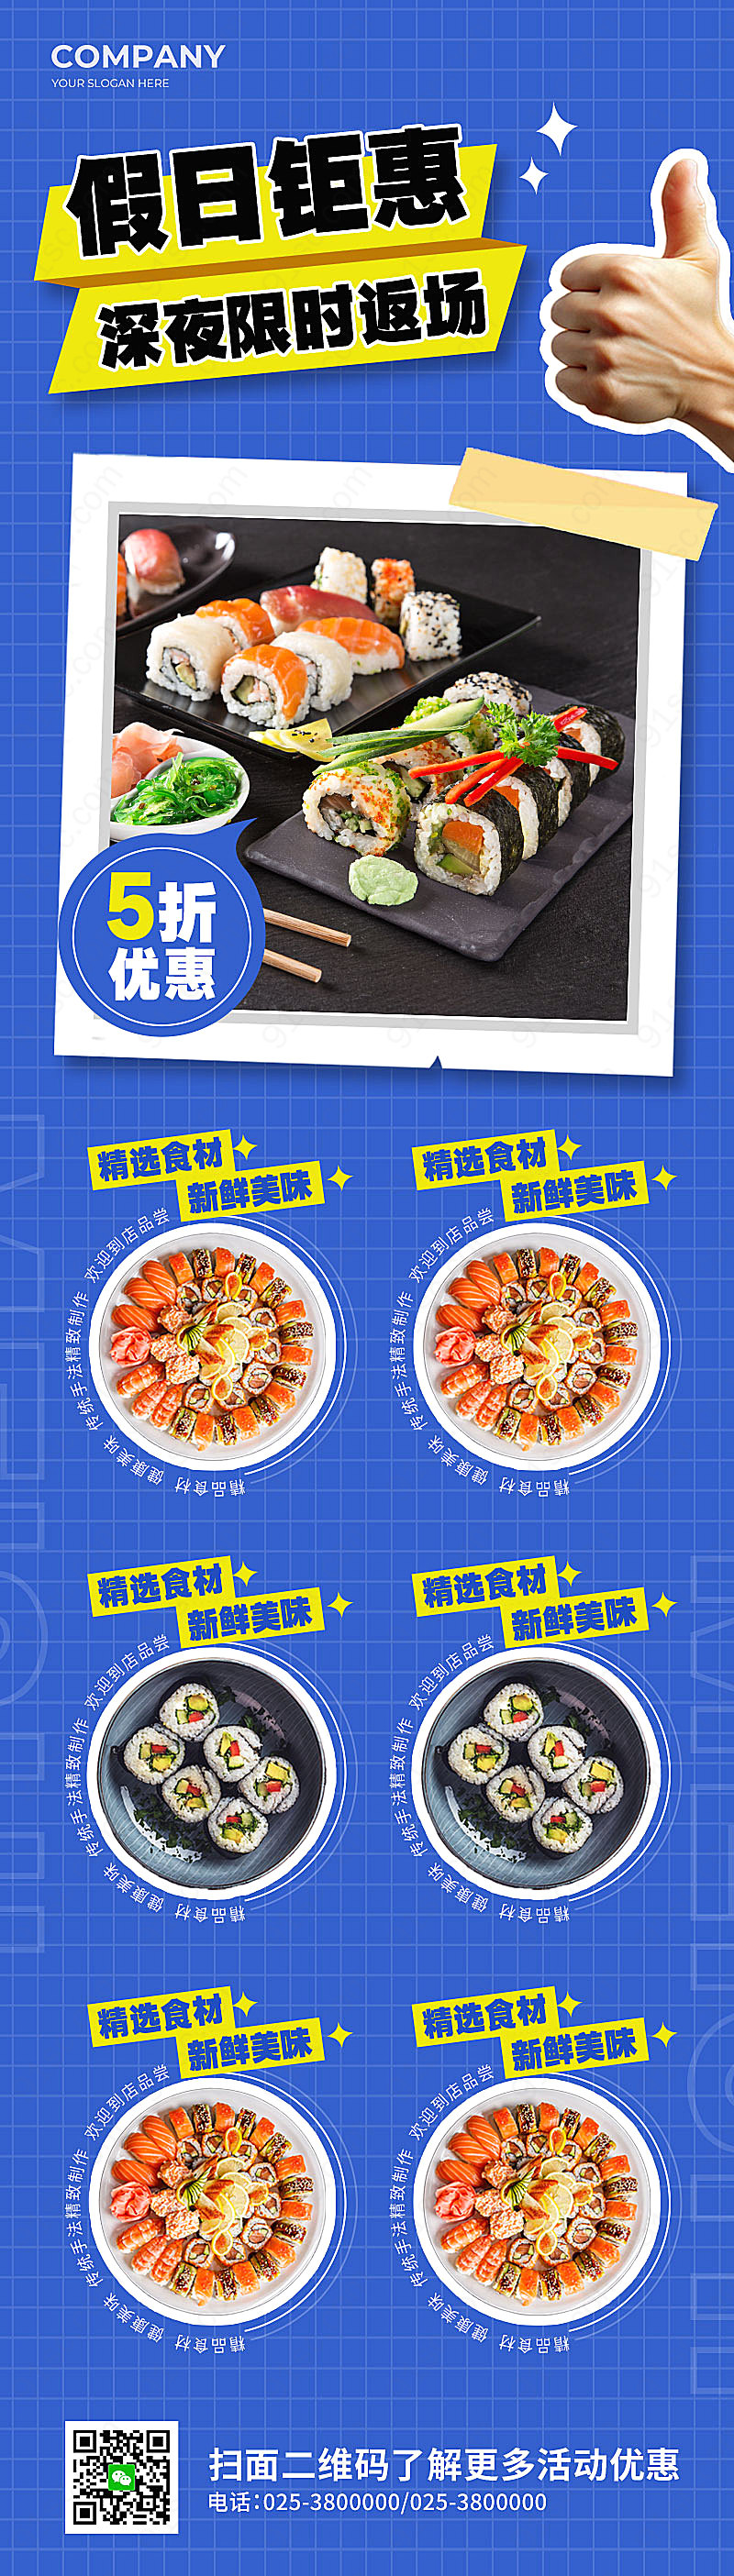 蓝色简约假日特惠寿司促销美食活动海报新媒体用图下载